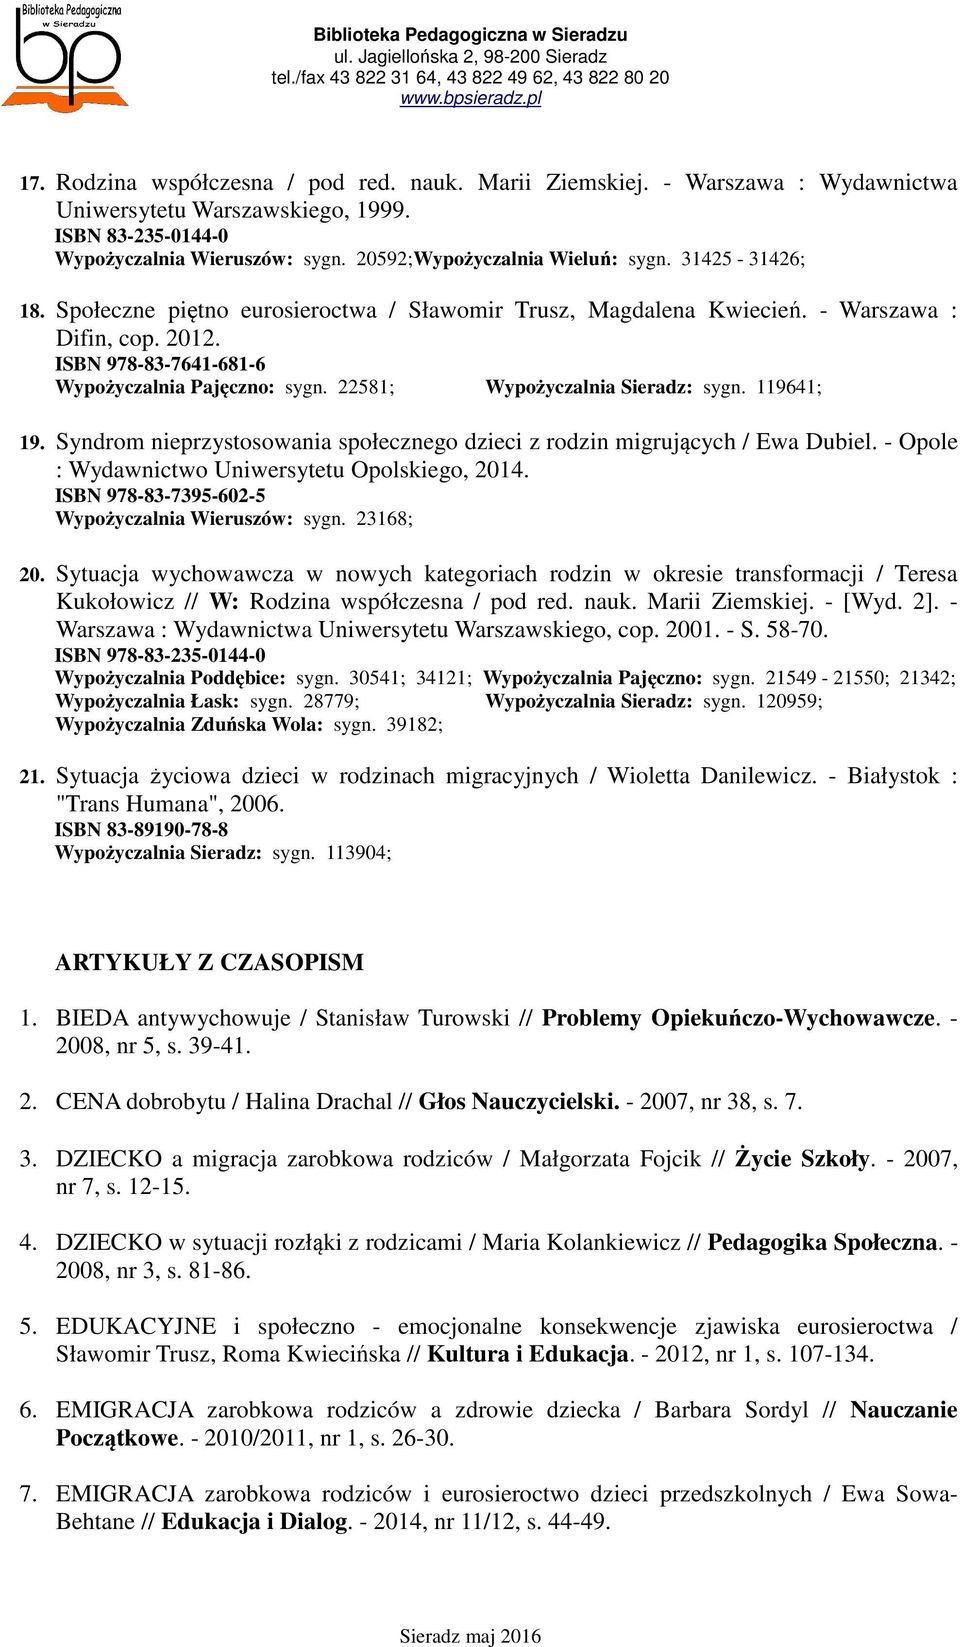 ISBN 978-83-7641-681-6 Wypożyczalnia Pajęczno: sygn. 22581; Wypożyczalnia Sieradz: sygn. 119641; 19. Syndrom nieprzystosowania społecznego dzieci z rodzin migrujących / Ewa Dubiel.